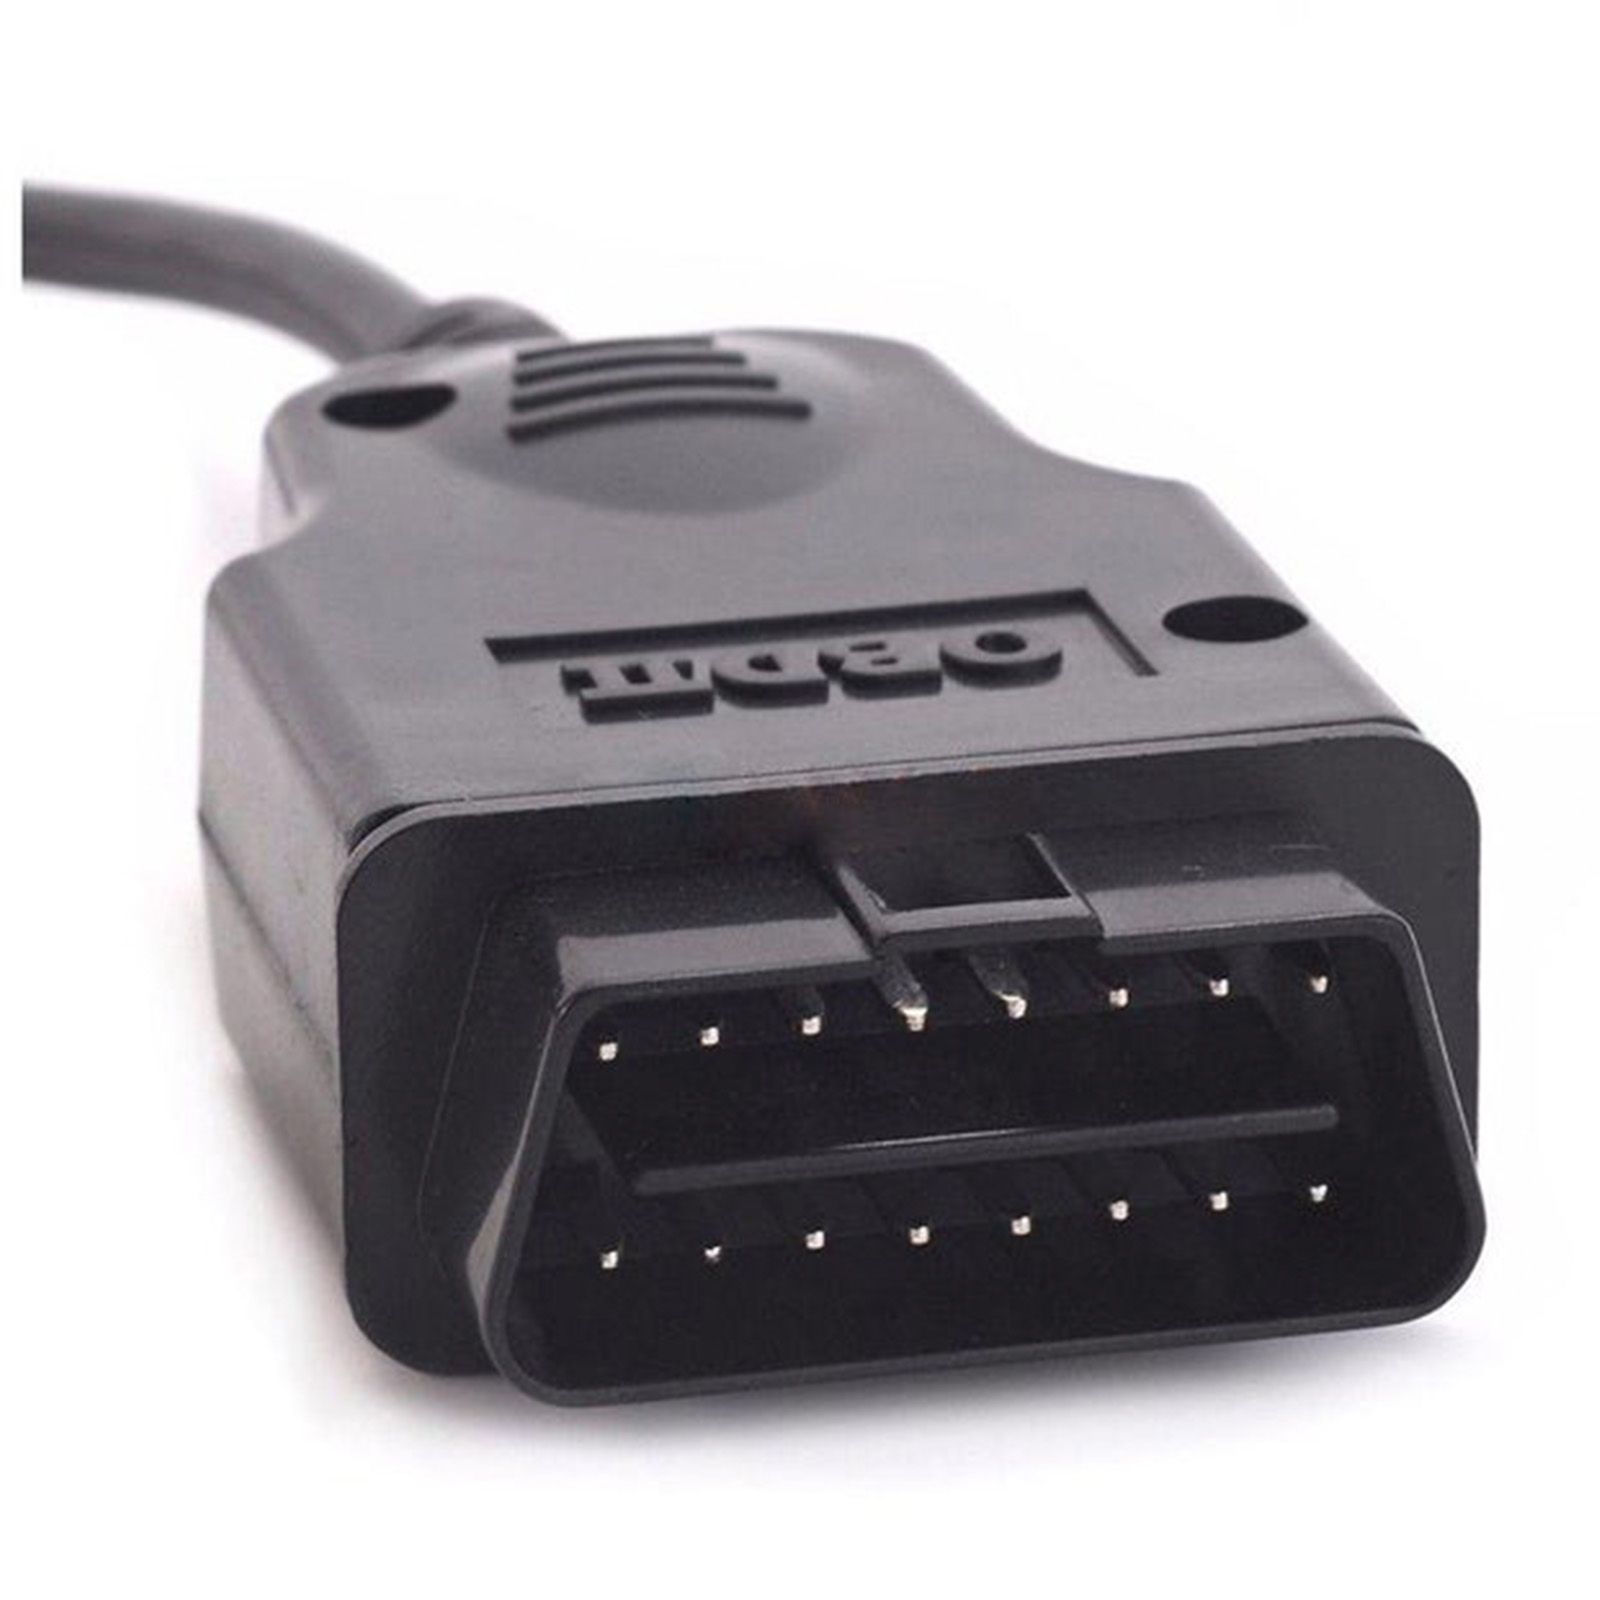 Autel MaxiScan MS300 OBD2 스캐너 자동차 코드 리더기, 엔진 램프 확인 끄기, 고장 코드 읽기 및 지우기, 배출 모니터 상태 CAN 차량 확인